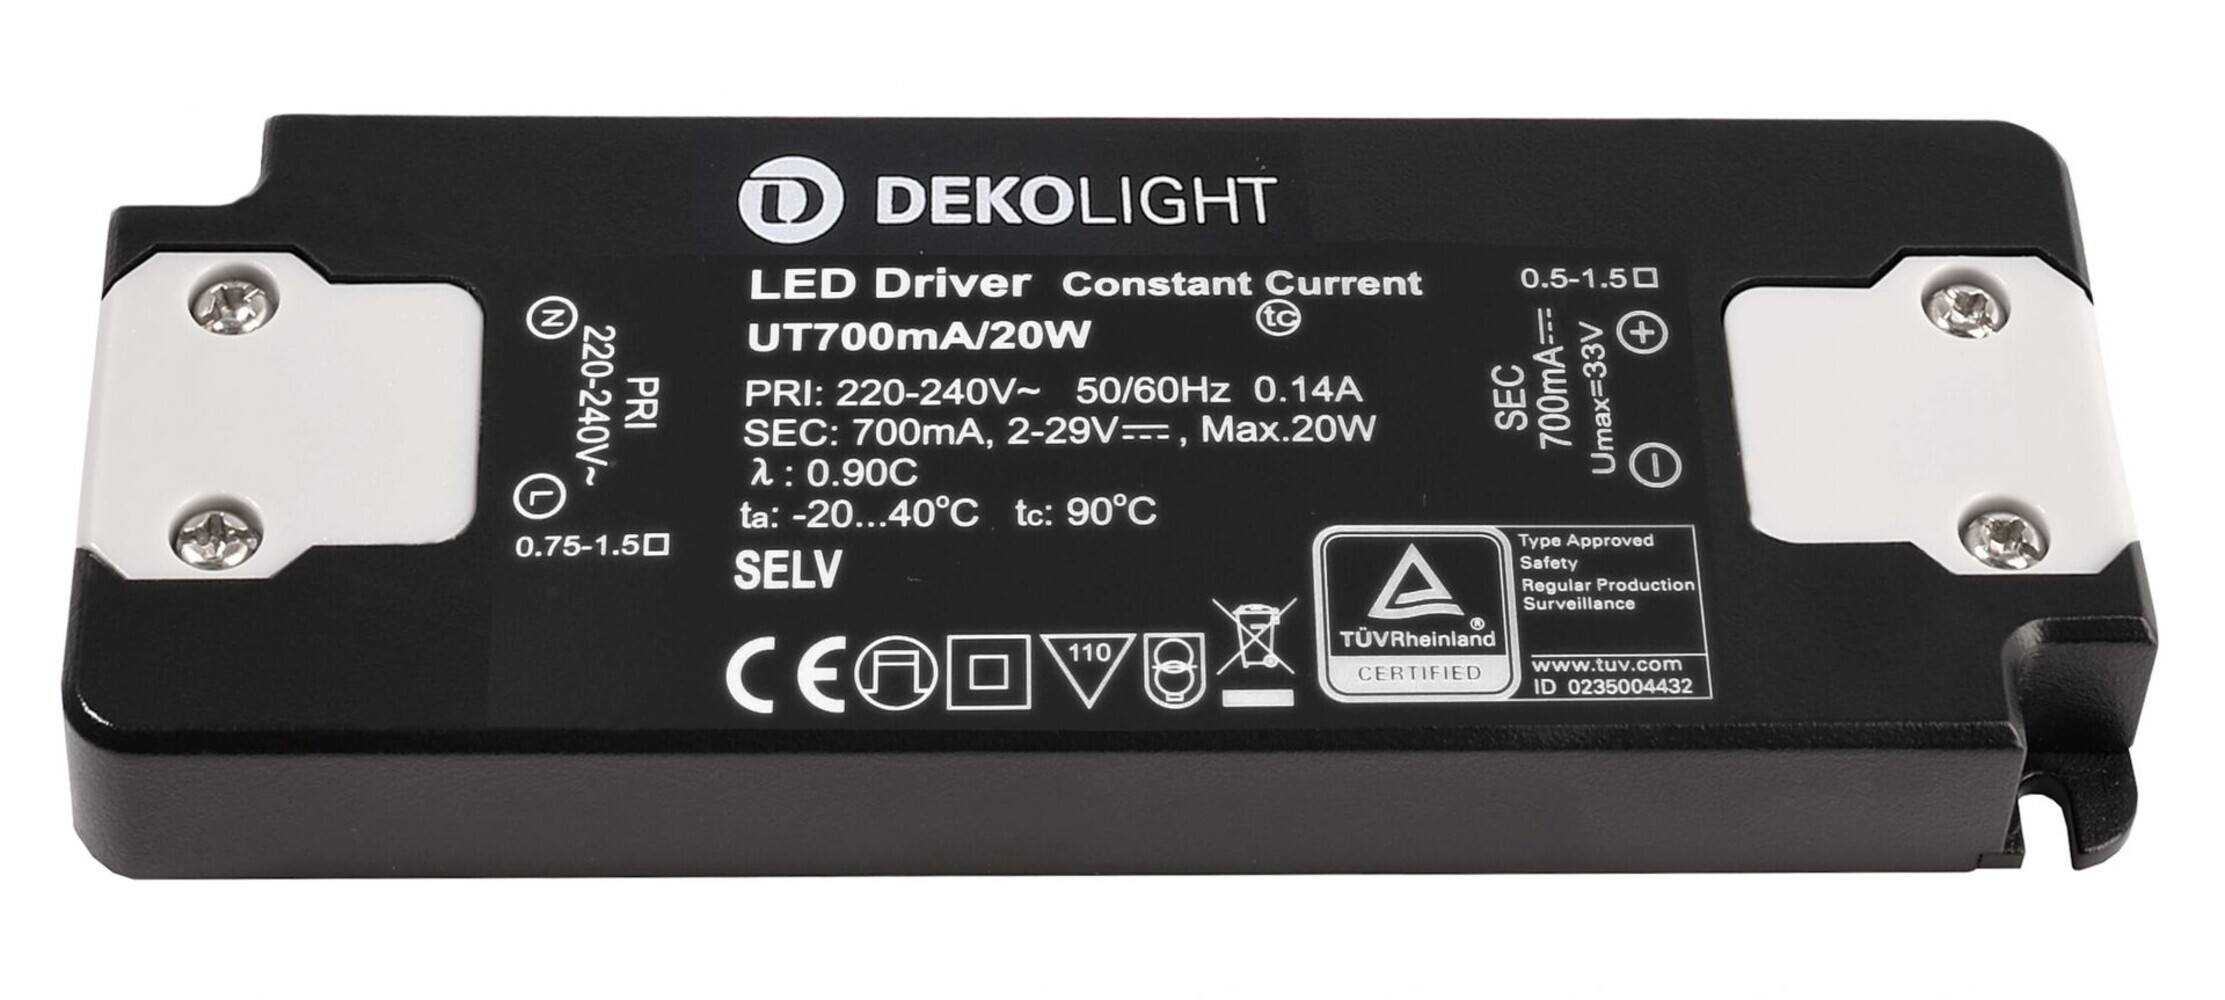 hochwertiges stromkonstantes LED Netzgerät von Deko-Light